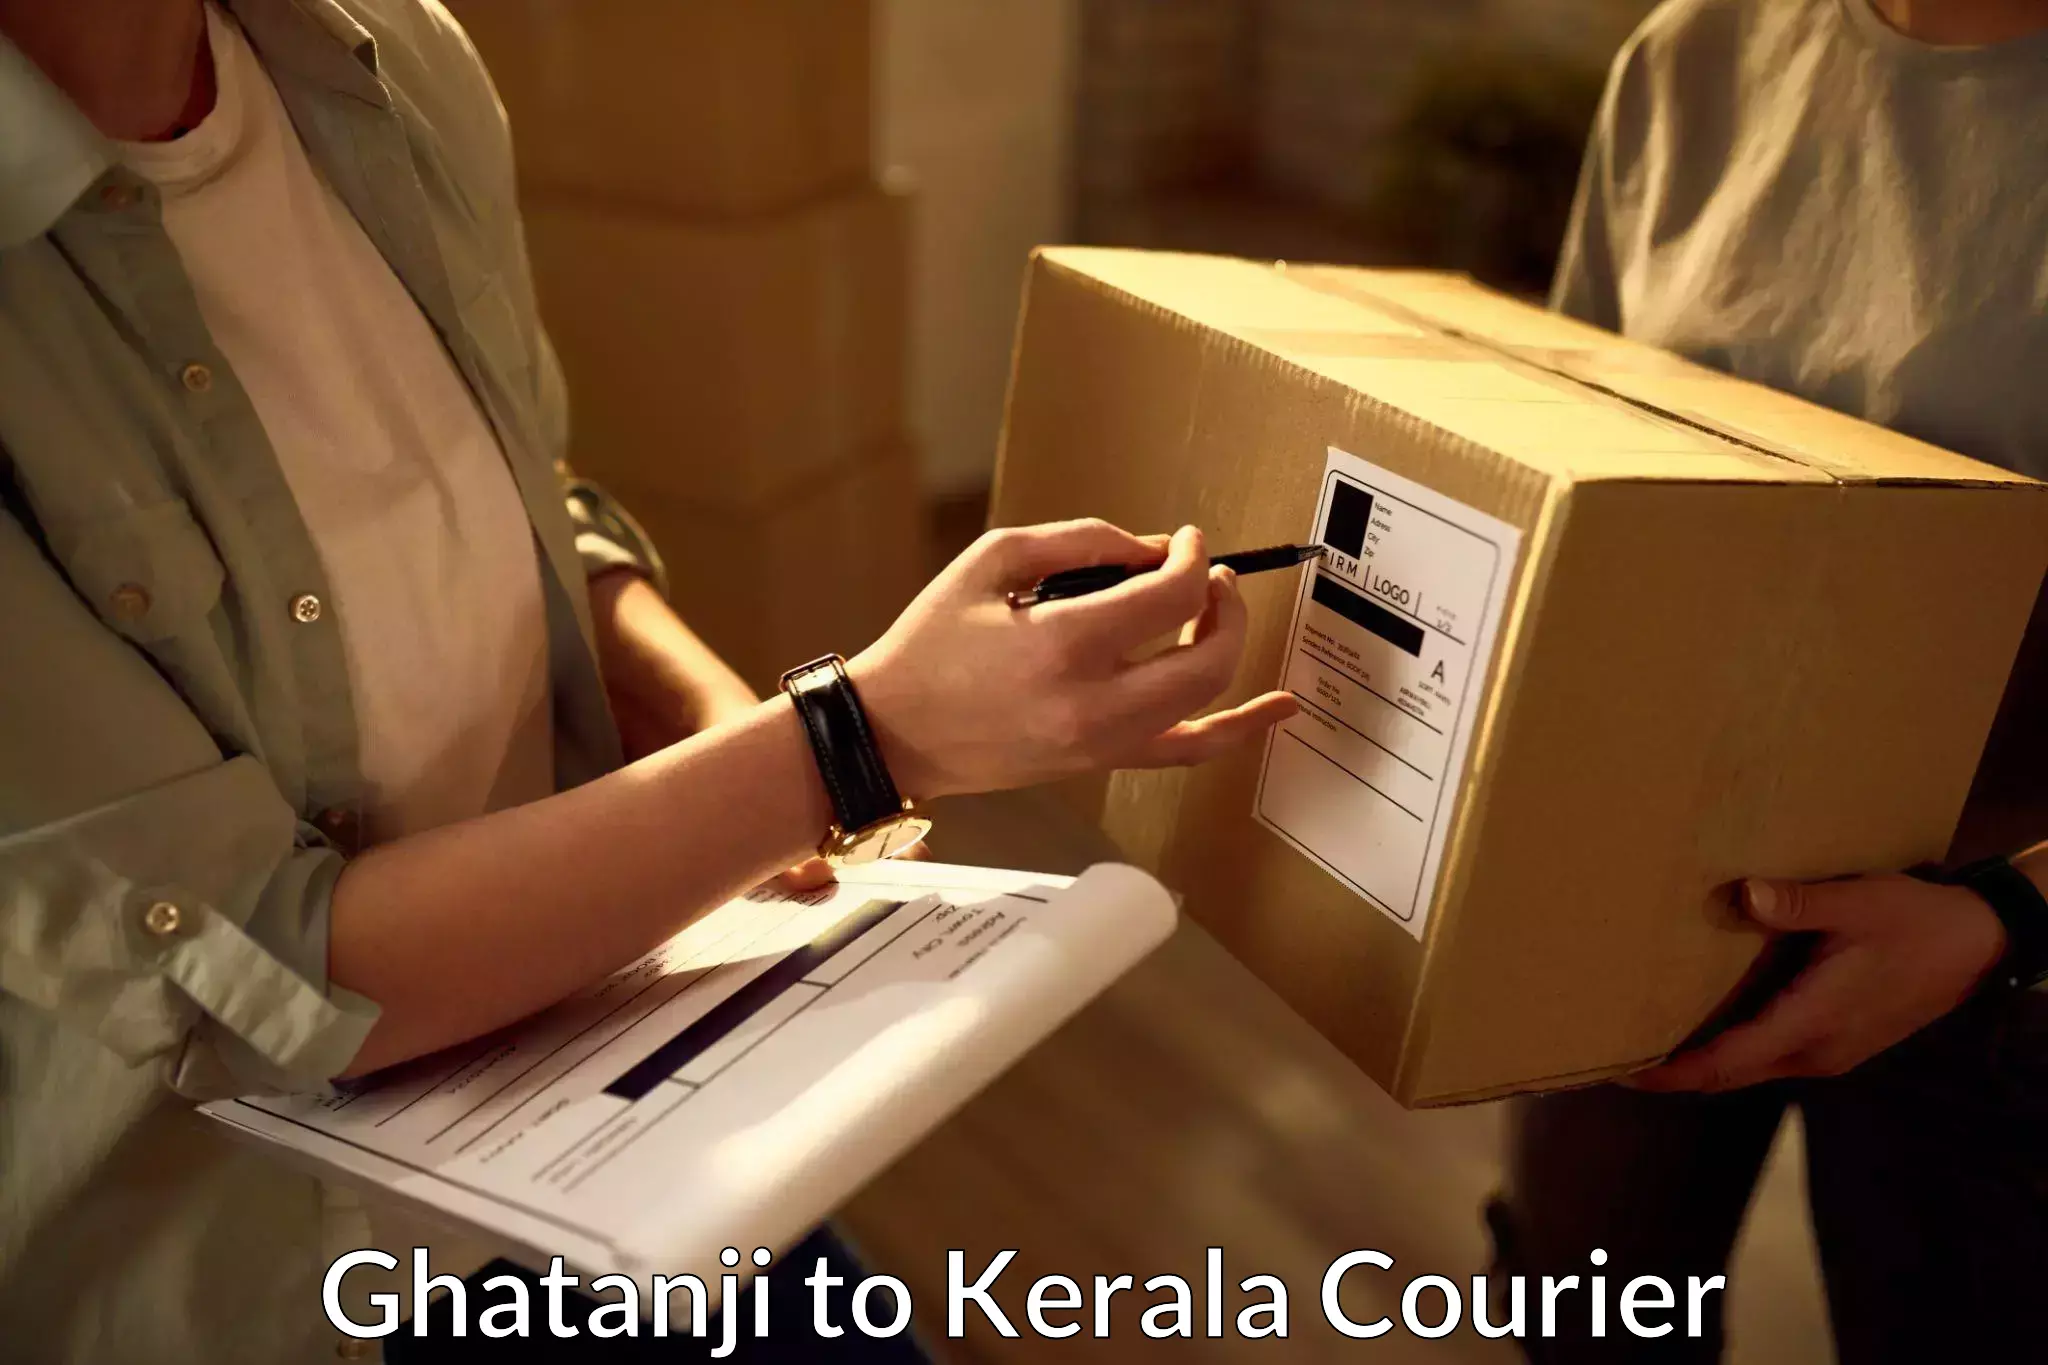 Express courier capabilities Ghatanji to Cochin Port Kochi